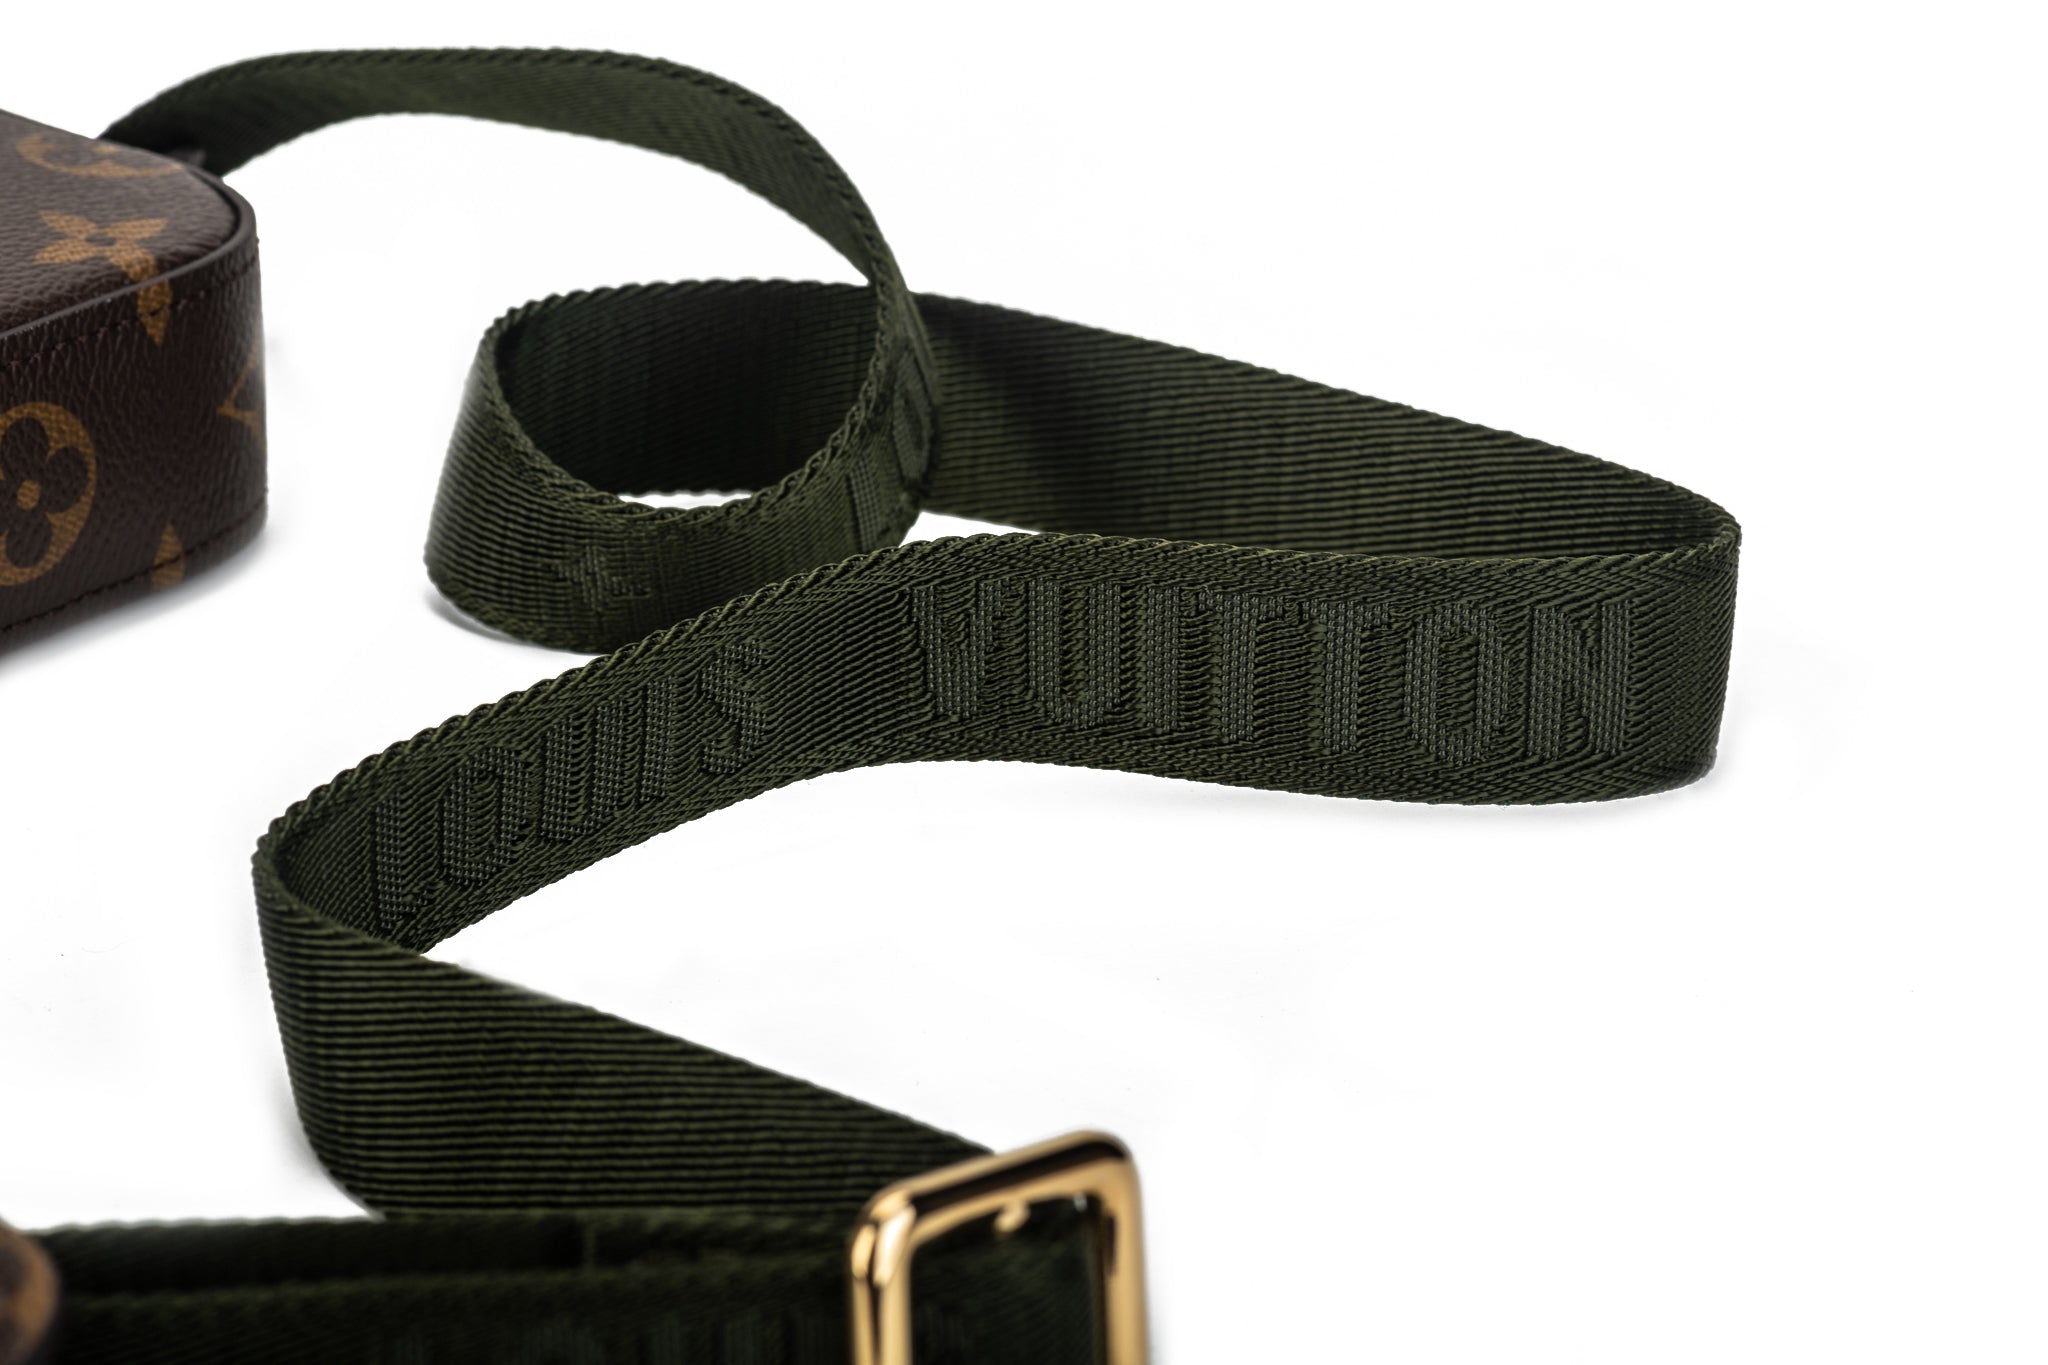 Louis Vuitton Mini Monogram Canvas Belt